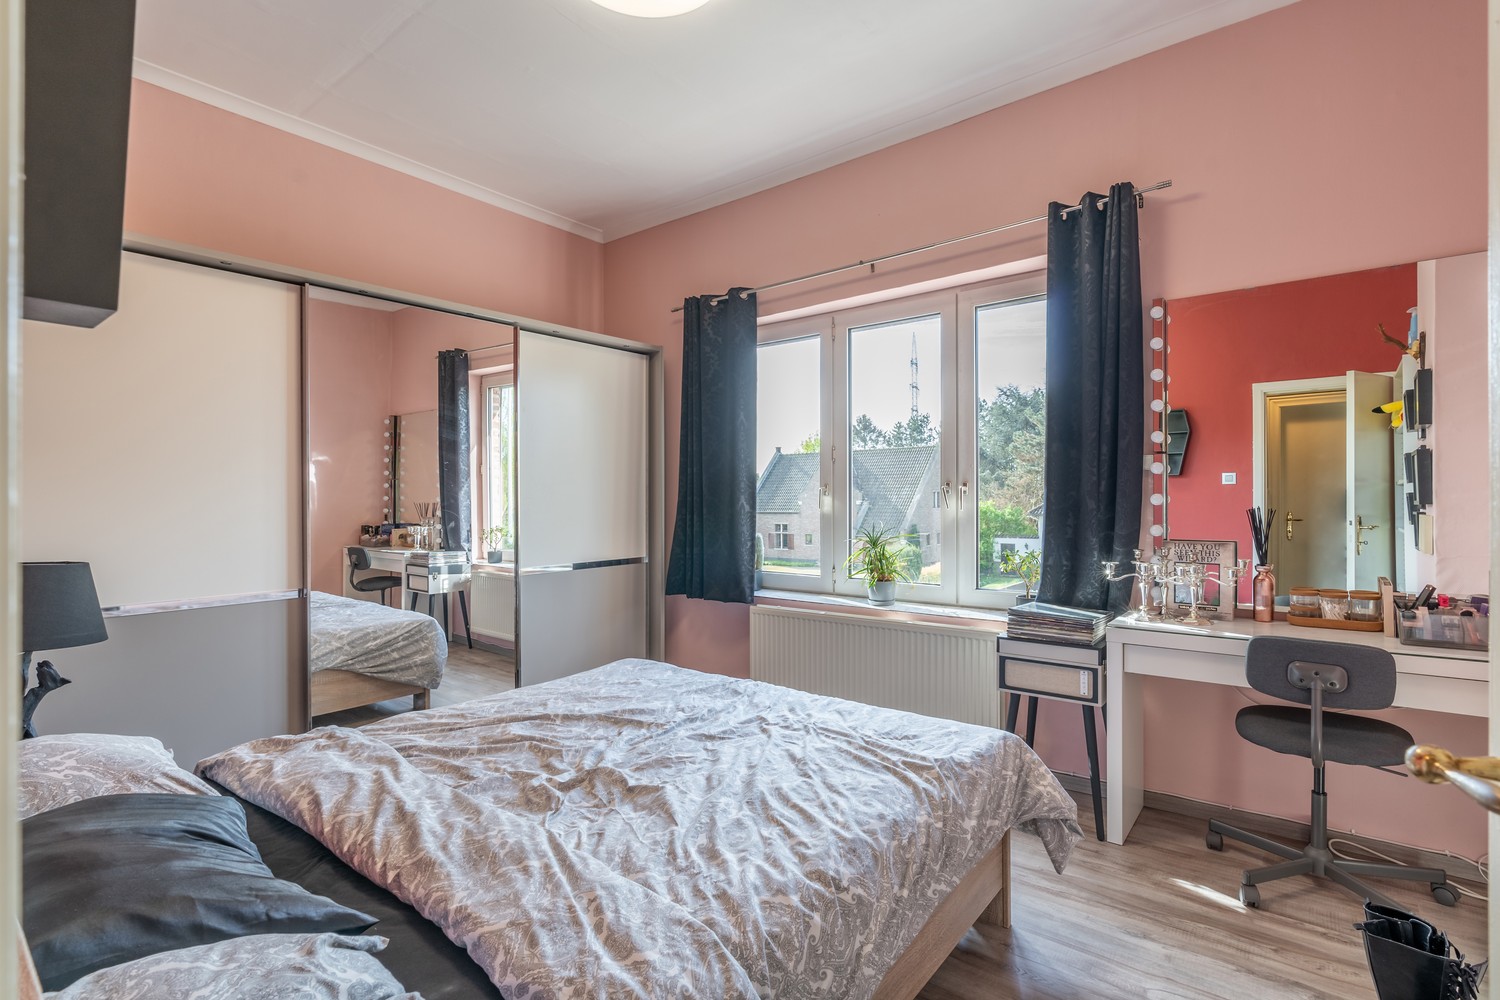 Gunstig gelegen woning met 3 slaapkamers te Sint-Truiden foto 18